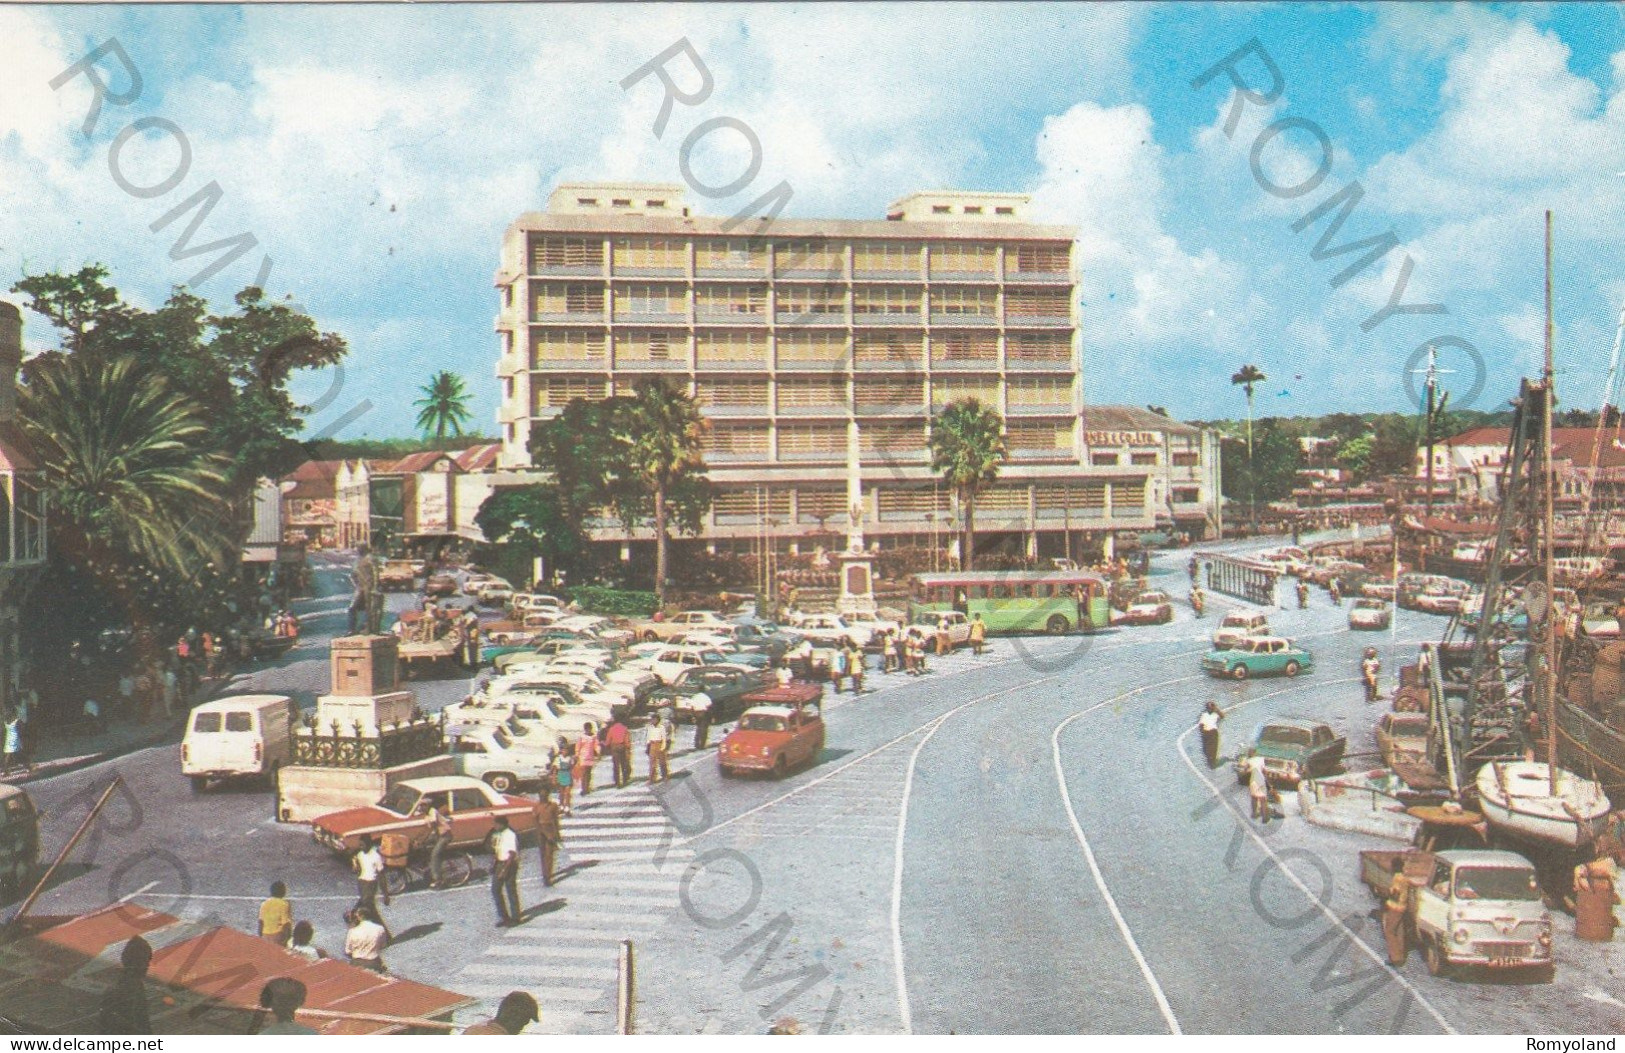 CARTOLINA  C9 BRIDGETOWN,BARBADOS,ANTILE-FORMATO PICCOLO,VIAGGIATA 1980 - Barbados (Barbuda)